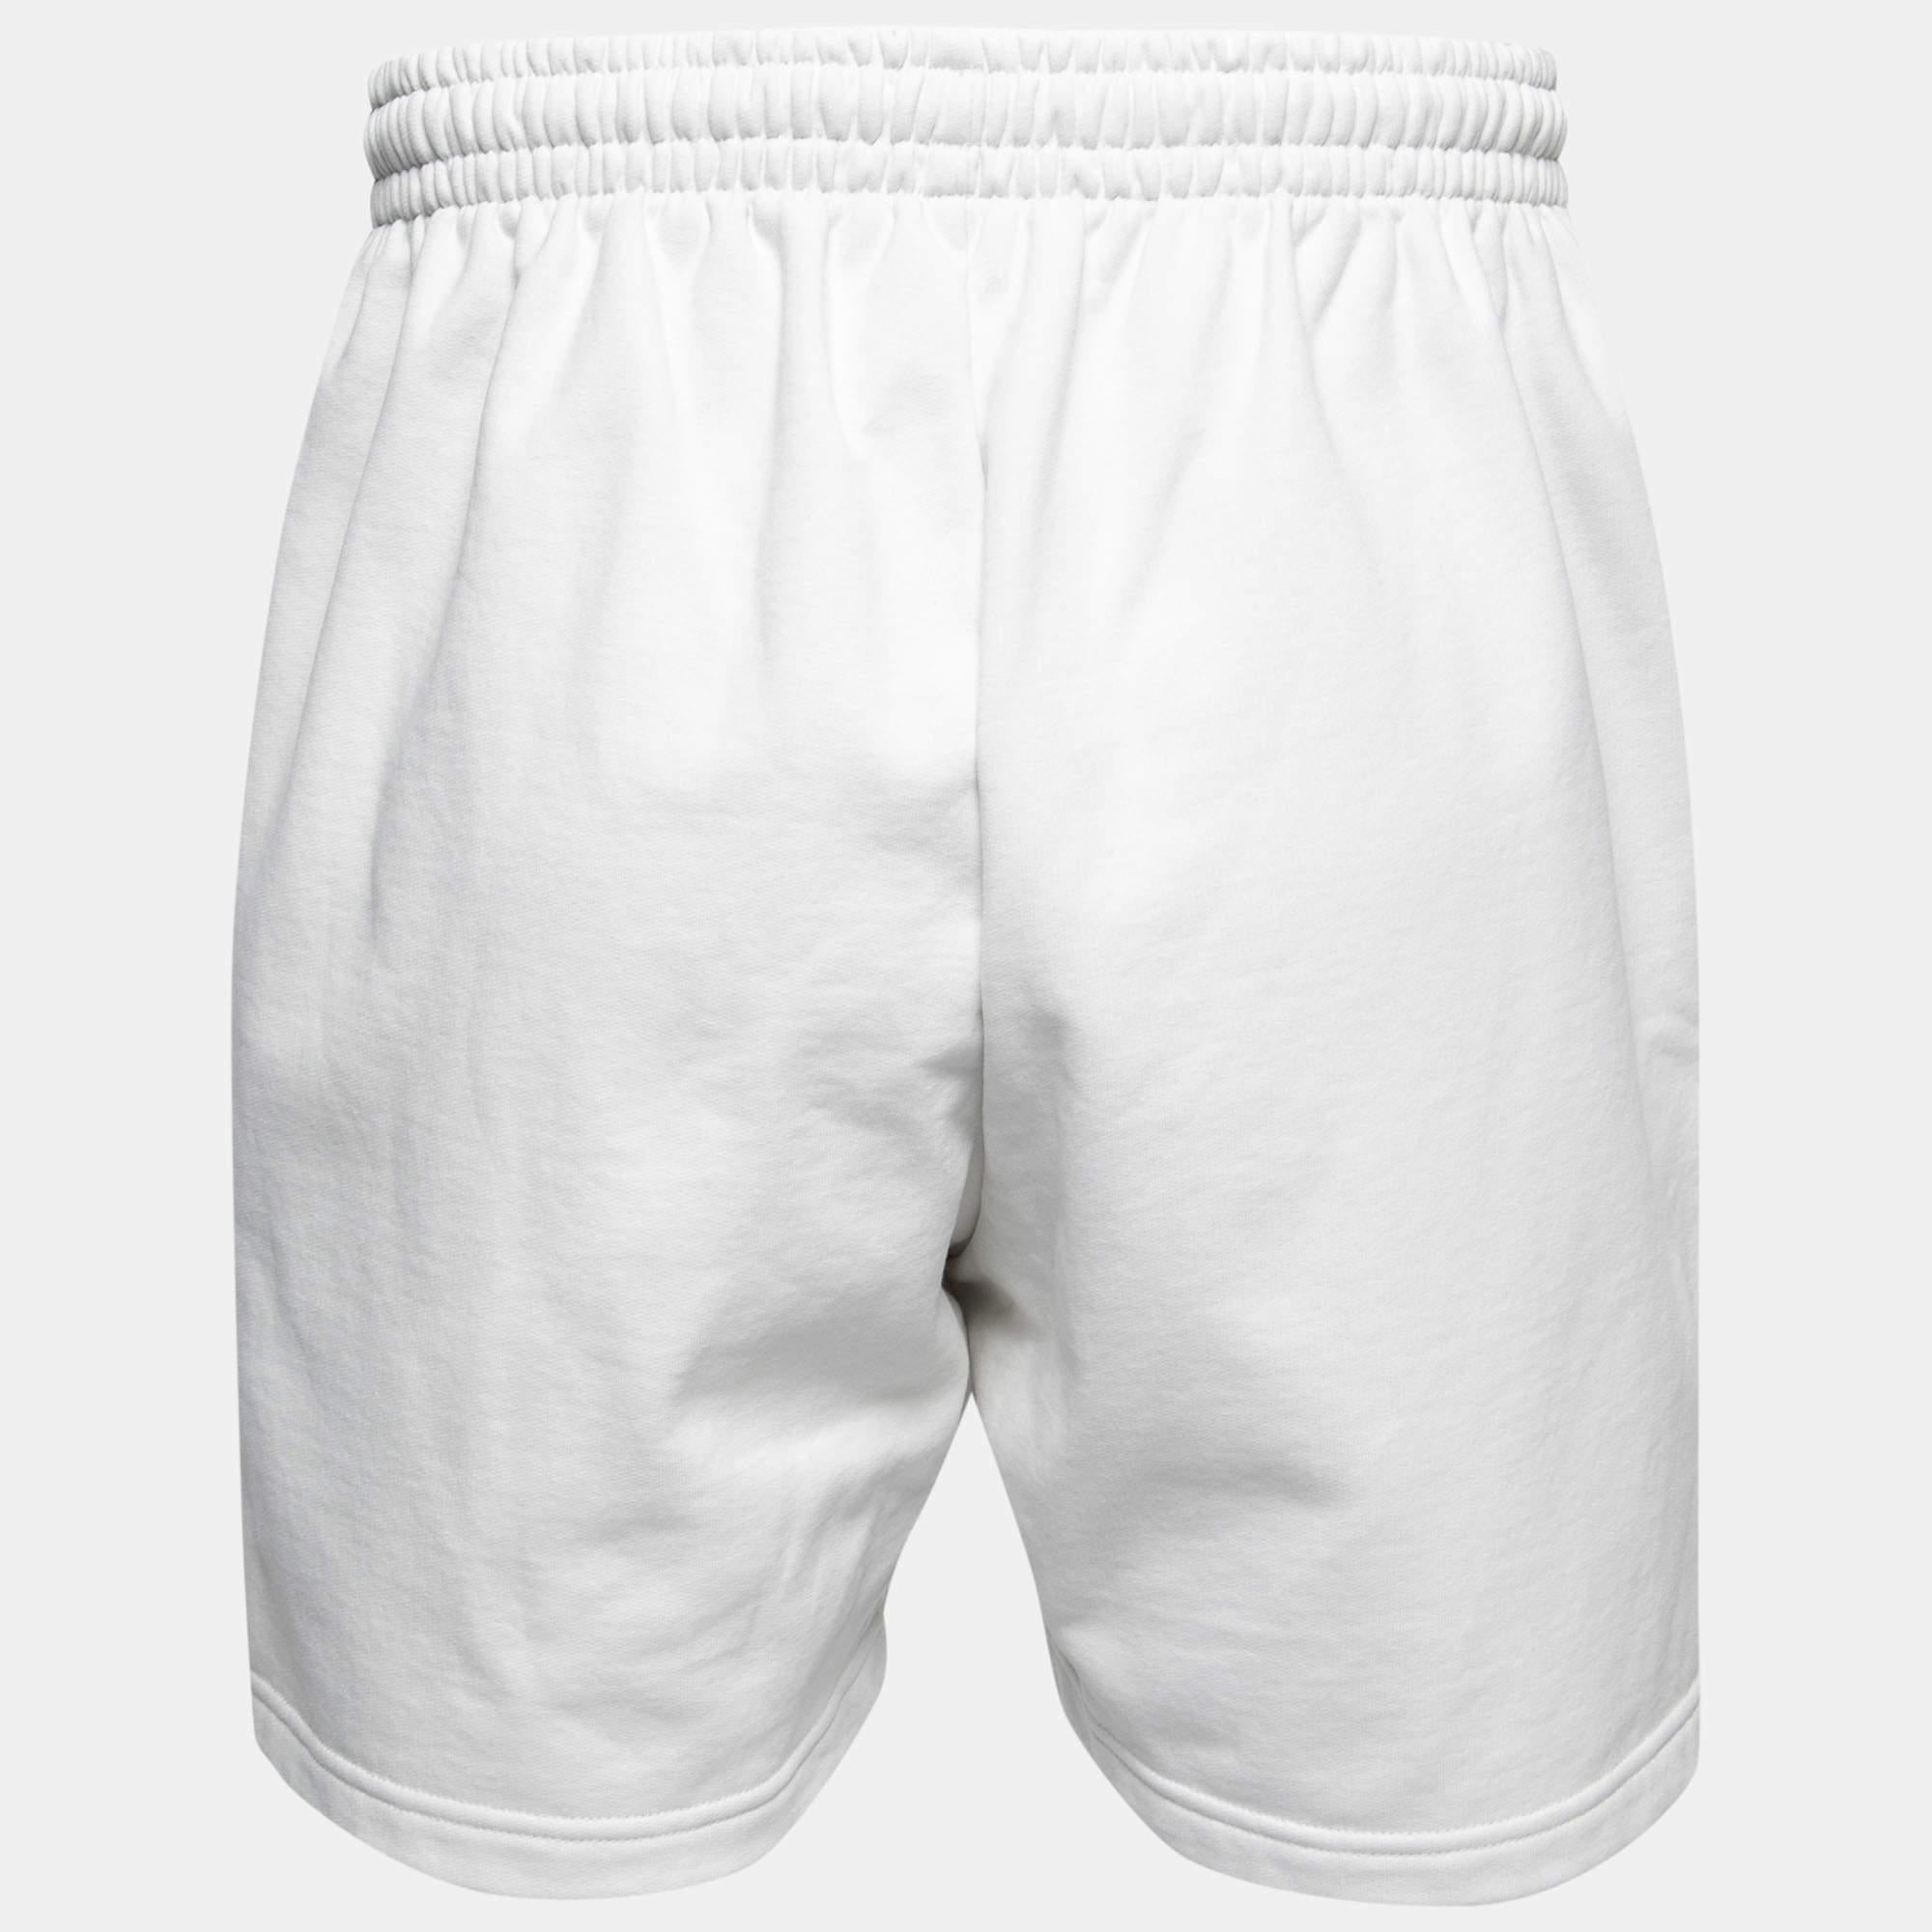 Diese Shorts von Balenciaga sind eine bequeme und stilvolle Wahl. Sie sind mit einem Logo und mehreren Taschen versehen. Einfach zu stylen und entspannt im Aussehen, werden diese Shorts Ihr Favorit sein!

Enthält: Marke Tag
